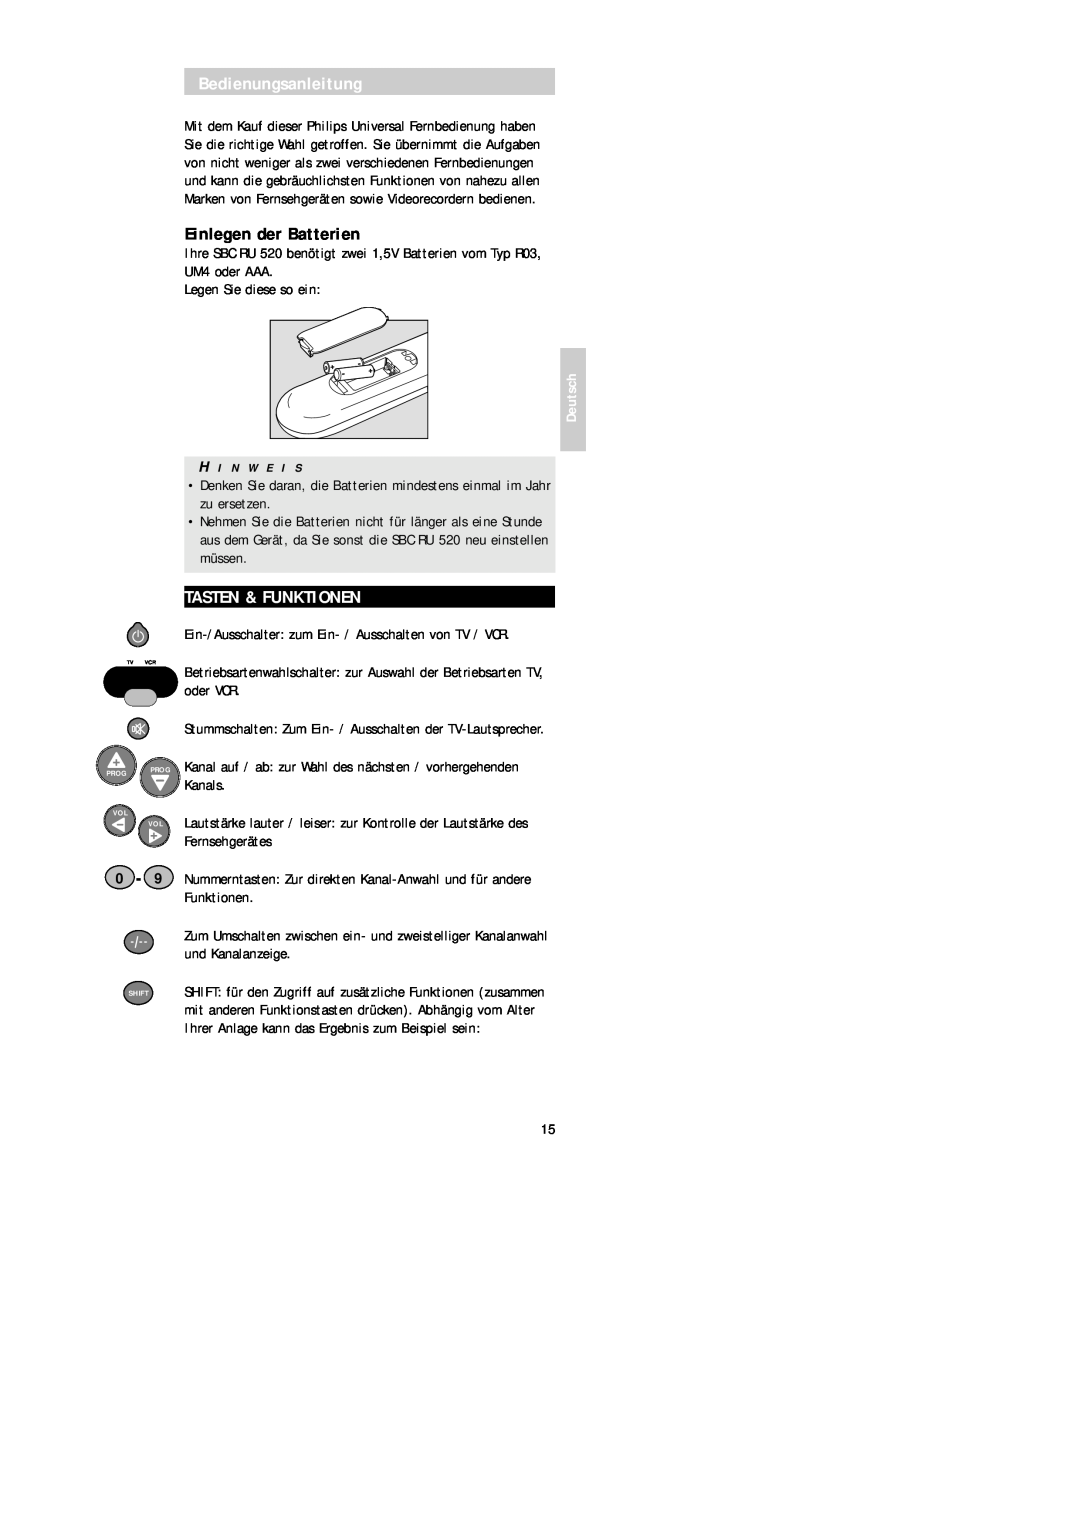 Philips SBC RU 520 manual Bedienungsanleitung, Einlegen der Batterien, Tasten & Funktionen, Deutsch 